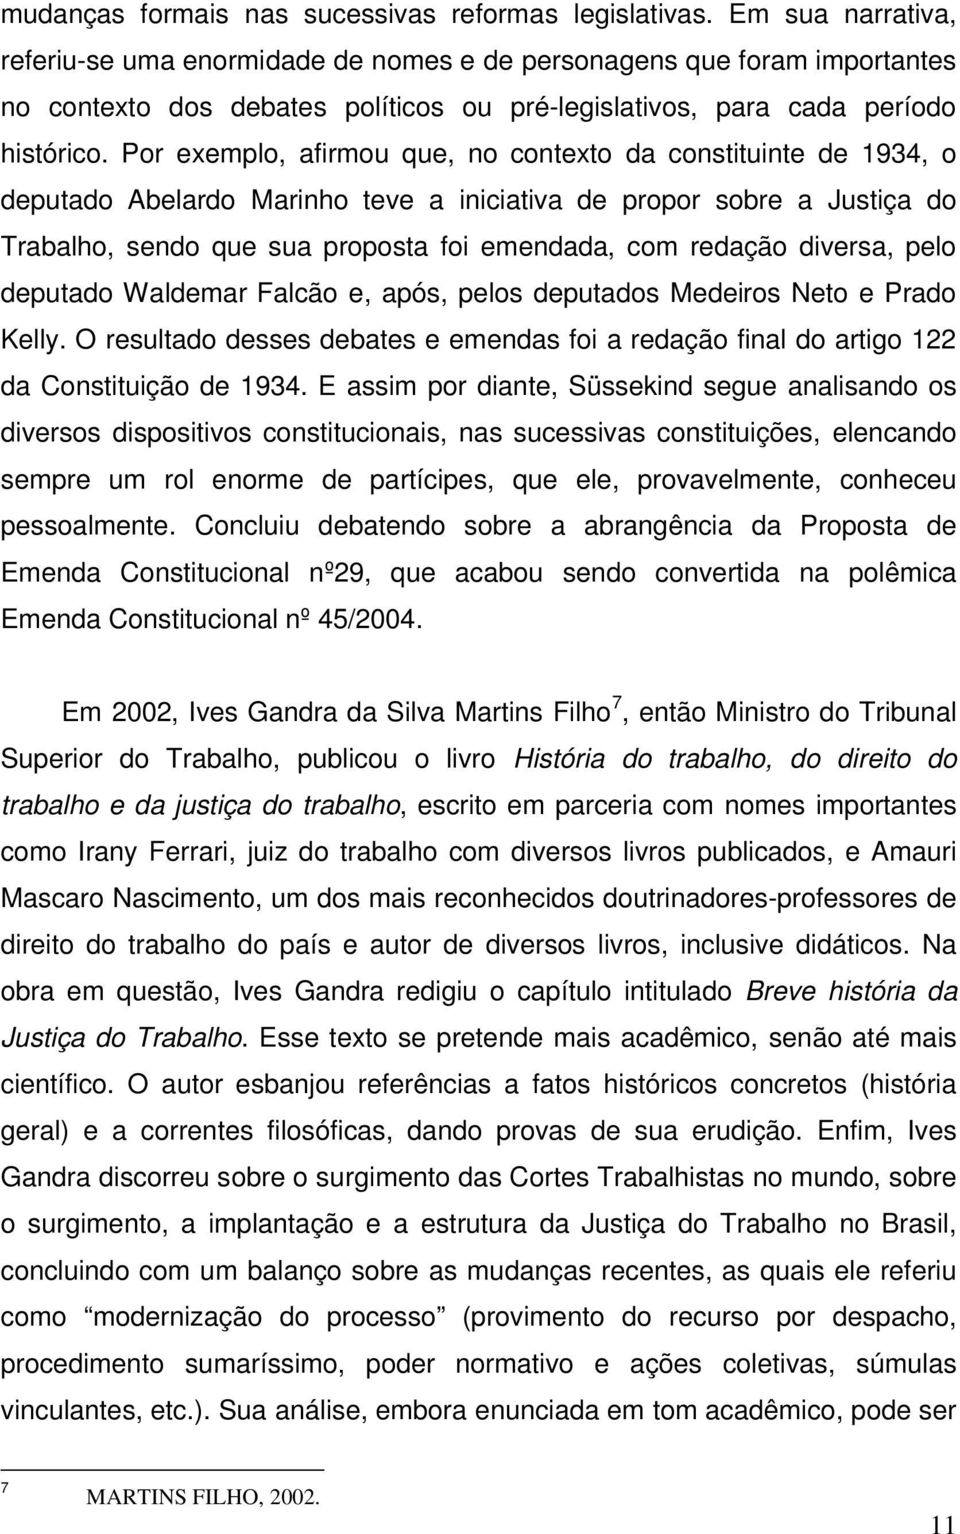 Por exemplo, afirmou que, no contexto da constituinte de 1934, o deputado Abelardo Marinho teve a iniciativa de propor sobre a Justiça do Trabalho, sendo que sua proposta foi emendada, com redação